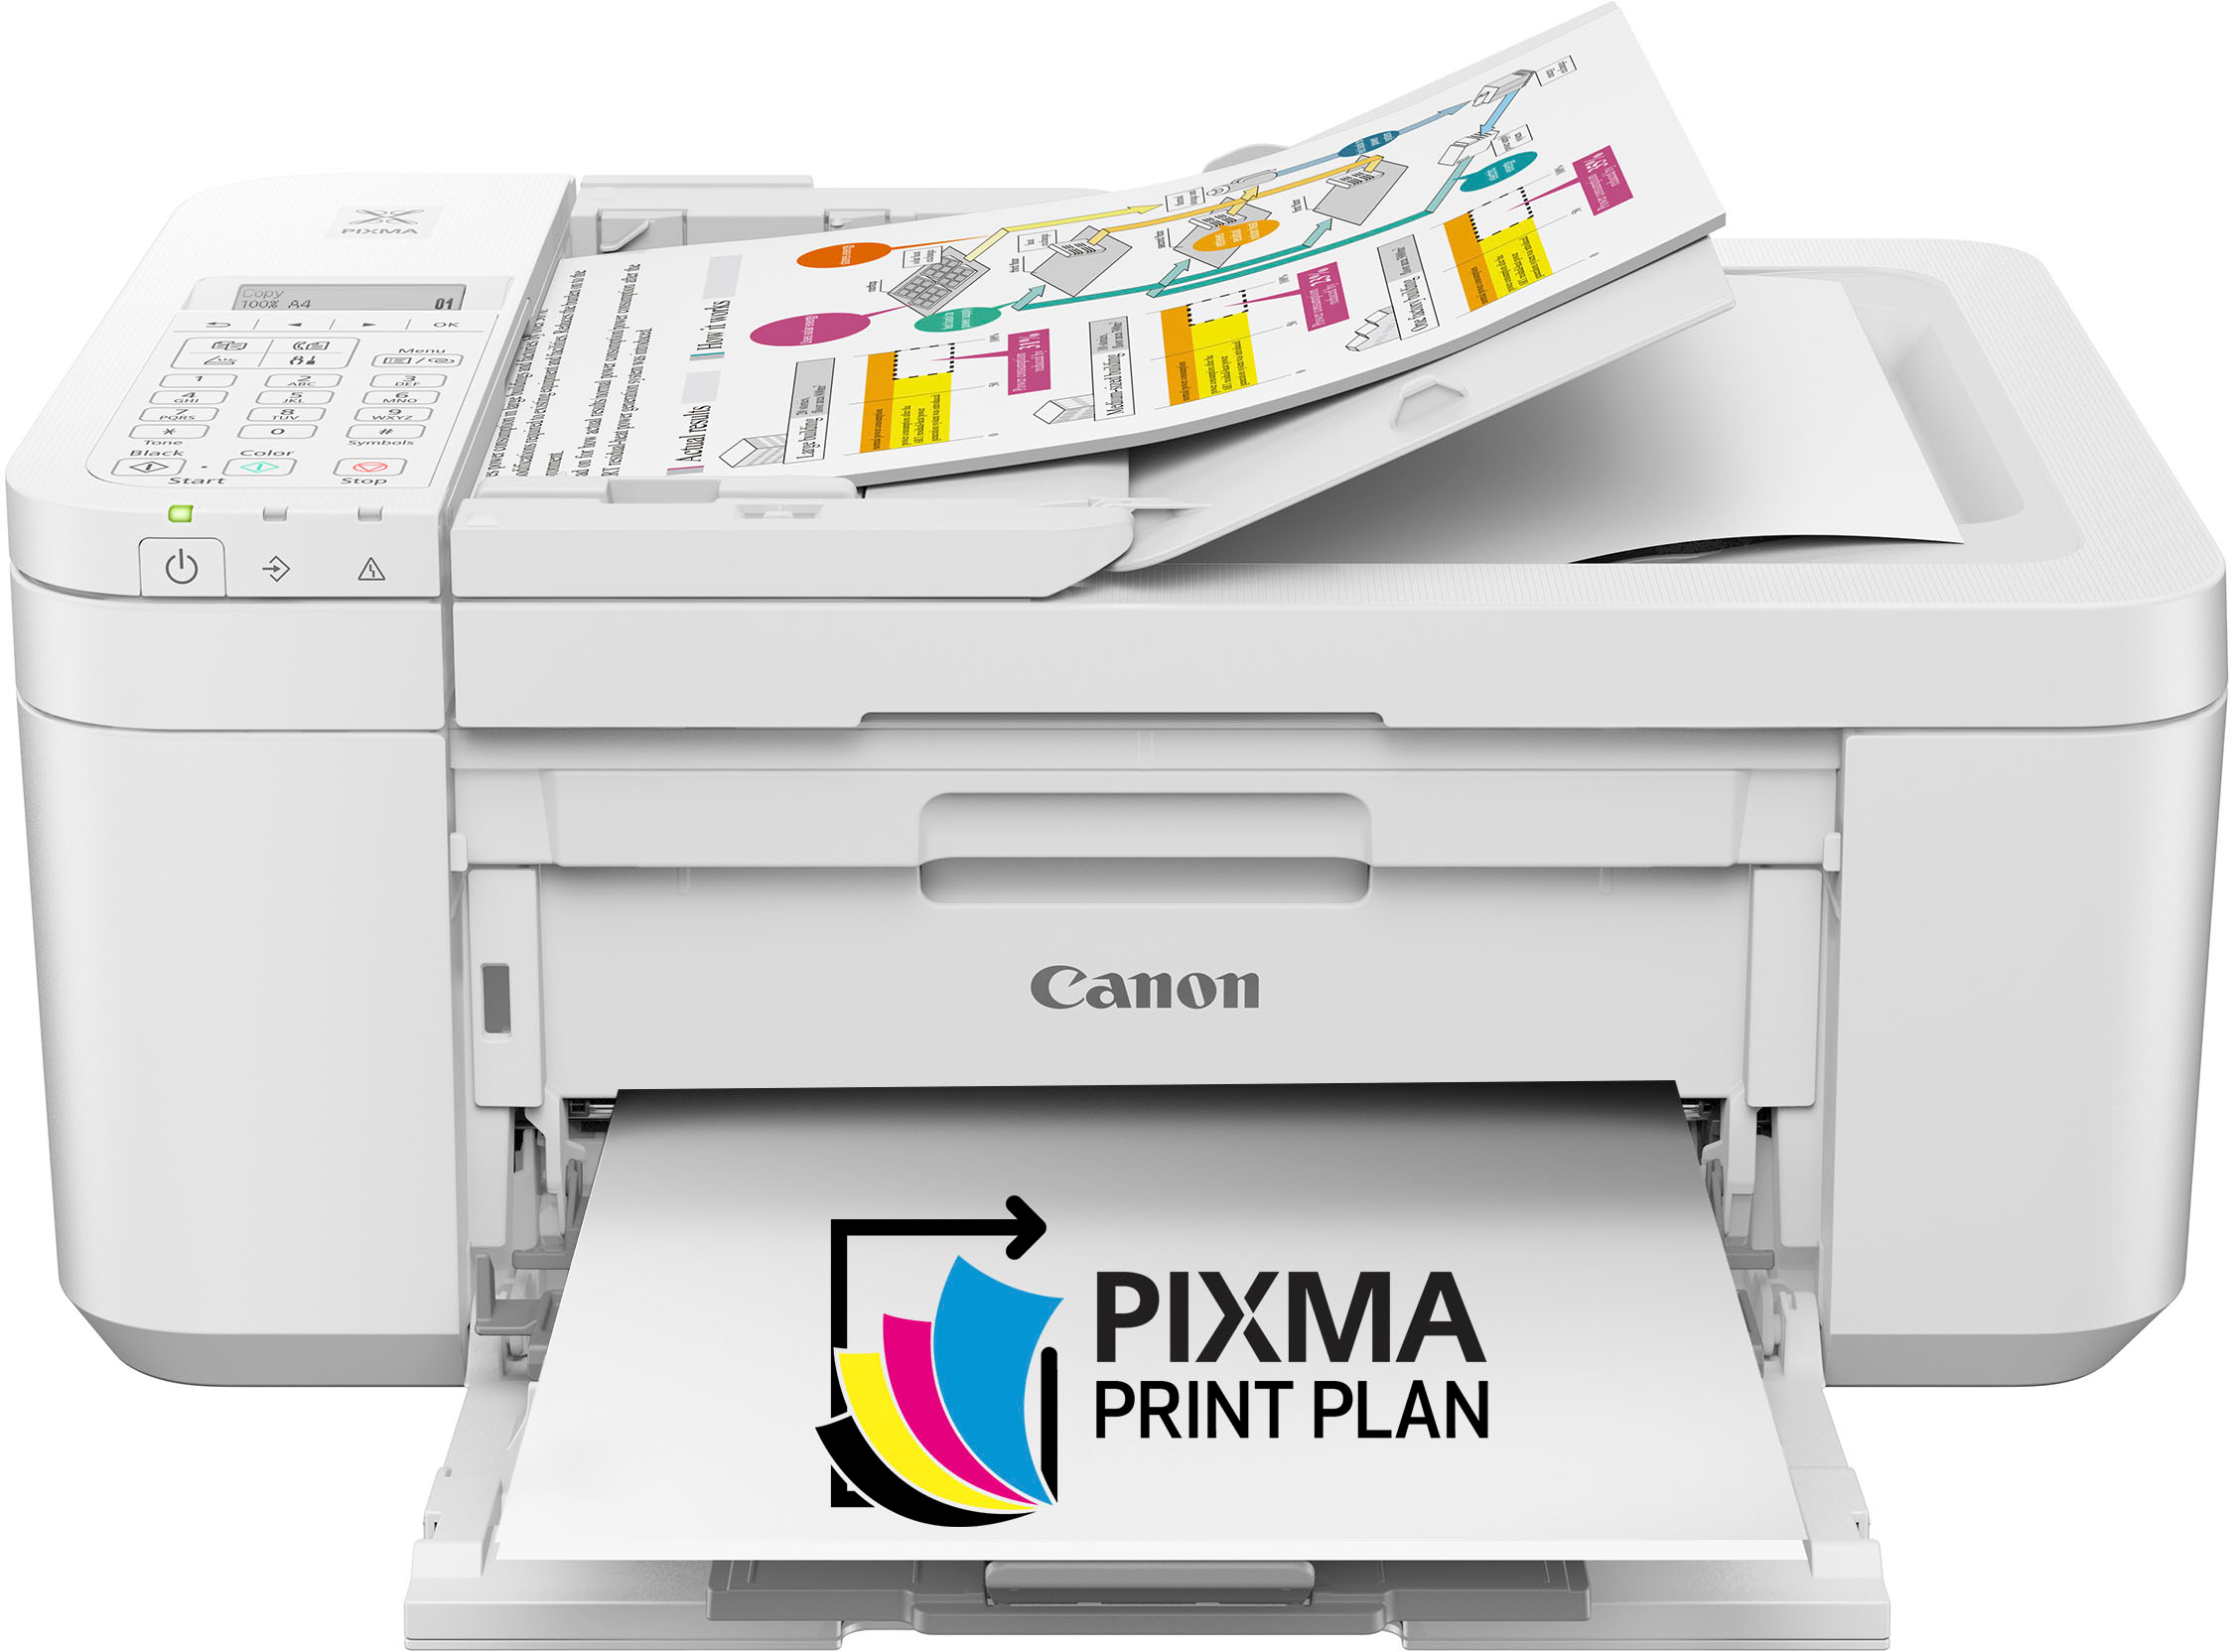 Imprimante Epson xp 245 multi-fonction ( wifi . Print . copy .scan